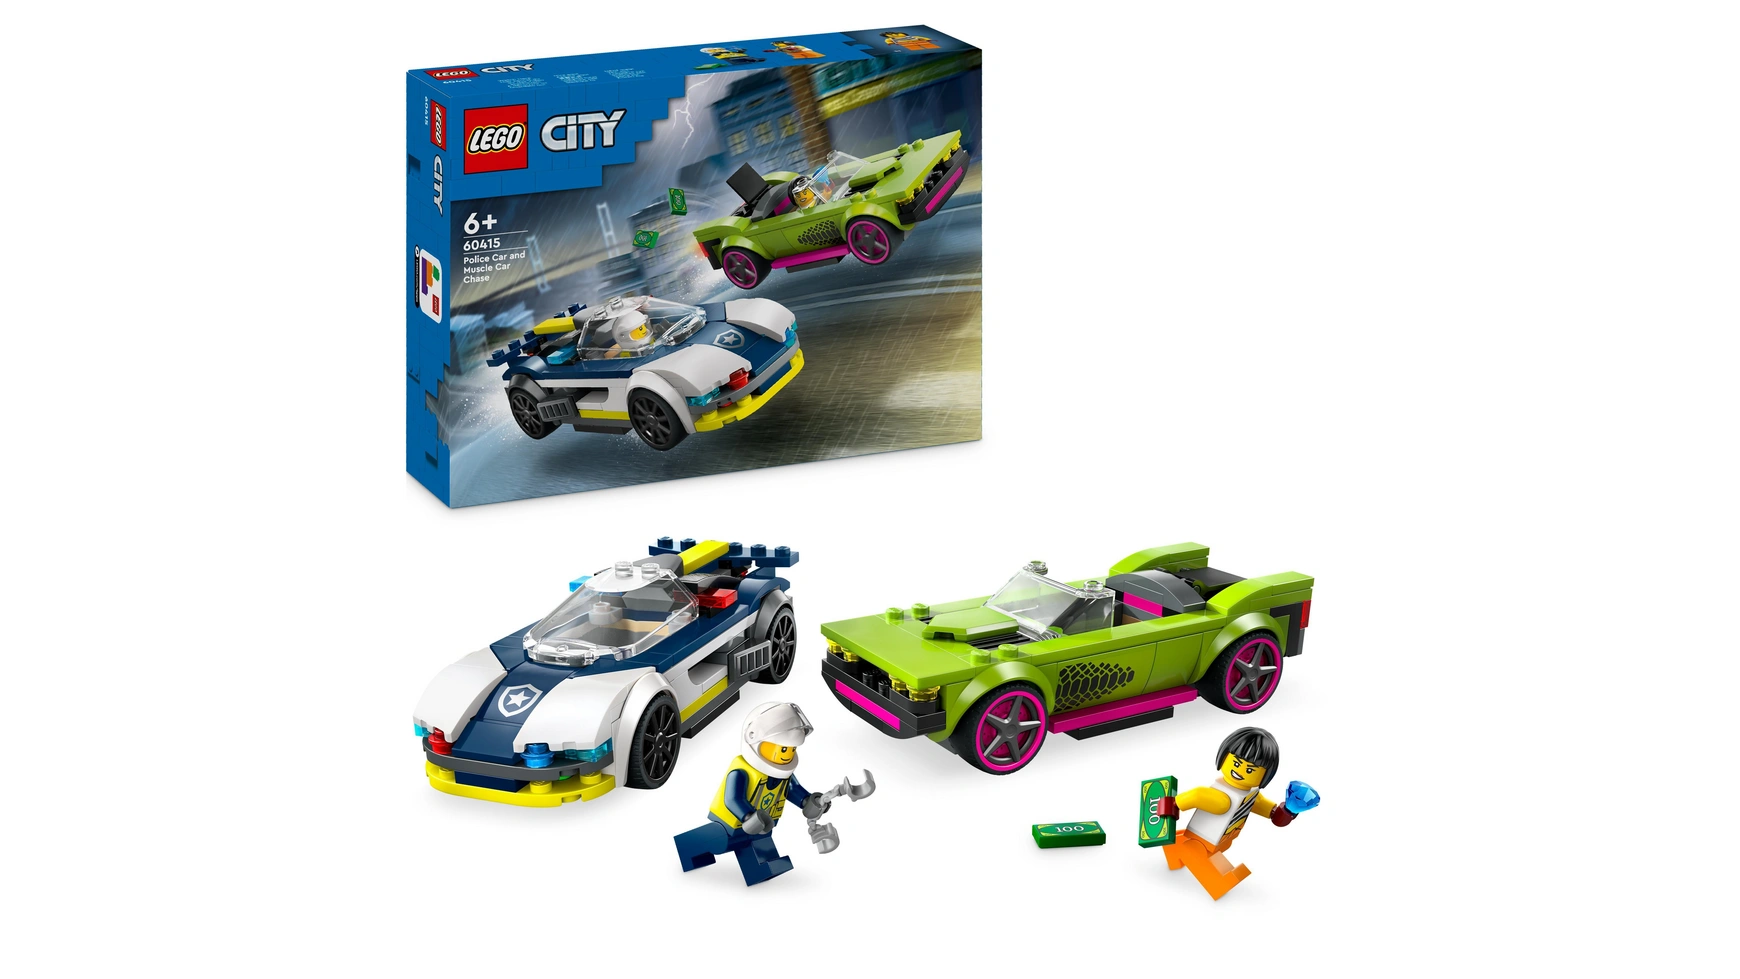 Lego City Погоня на полицейской машине и игрушечный автомобиль с мускулистыми машинами lego city undercover the chase begins nintendo 3ds